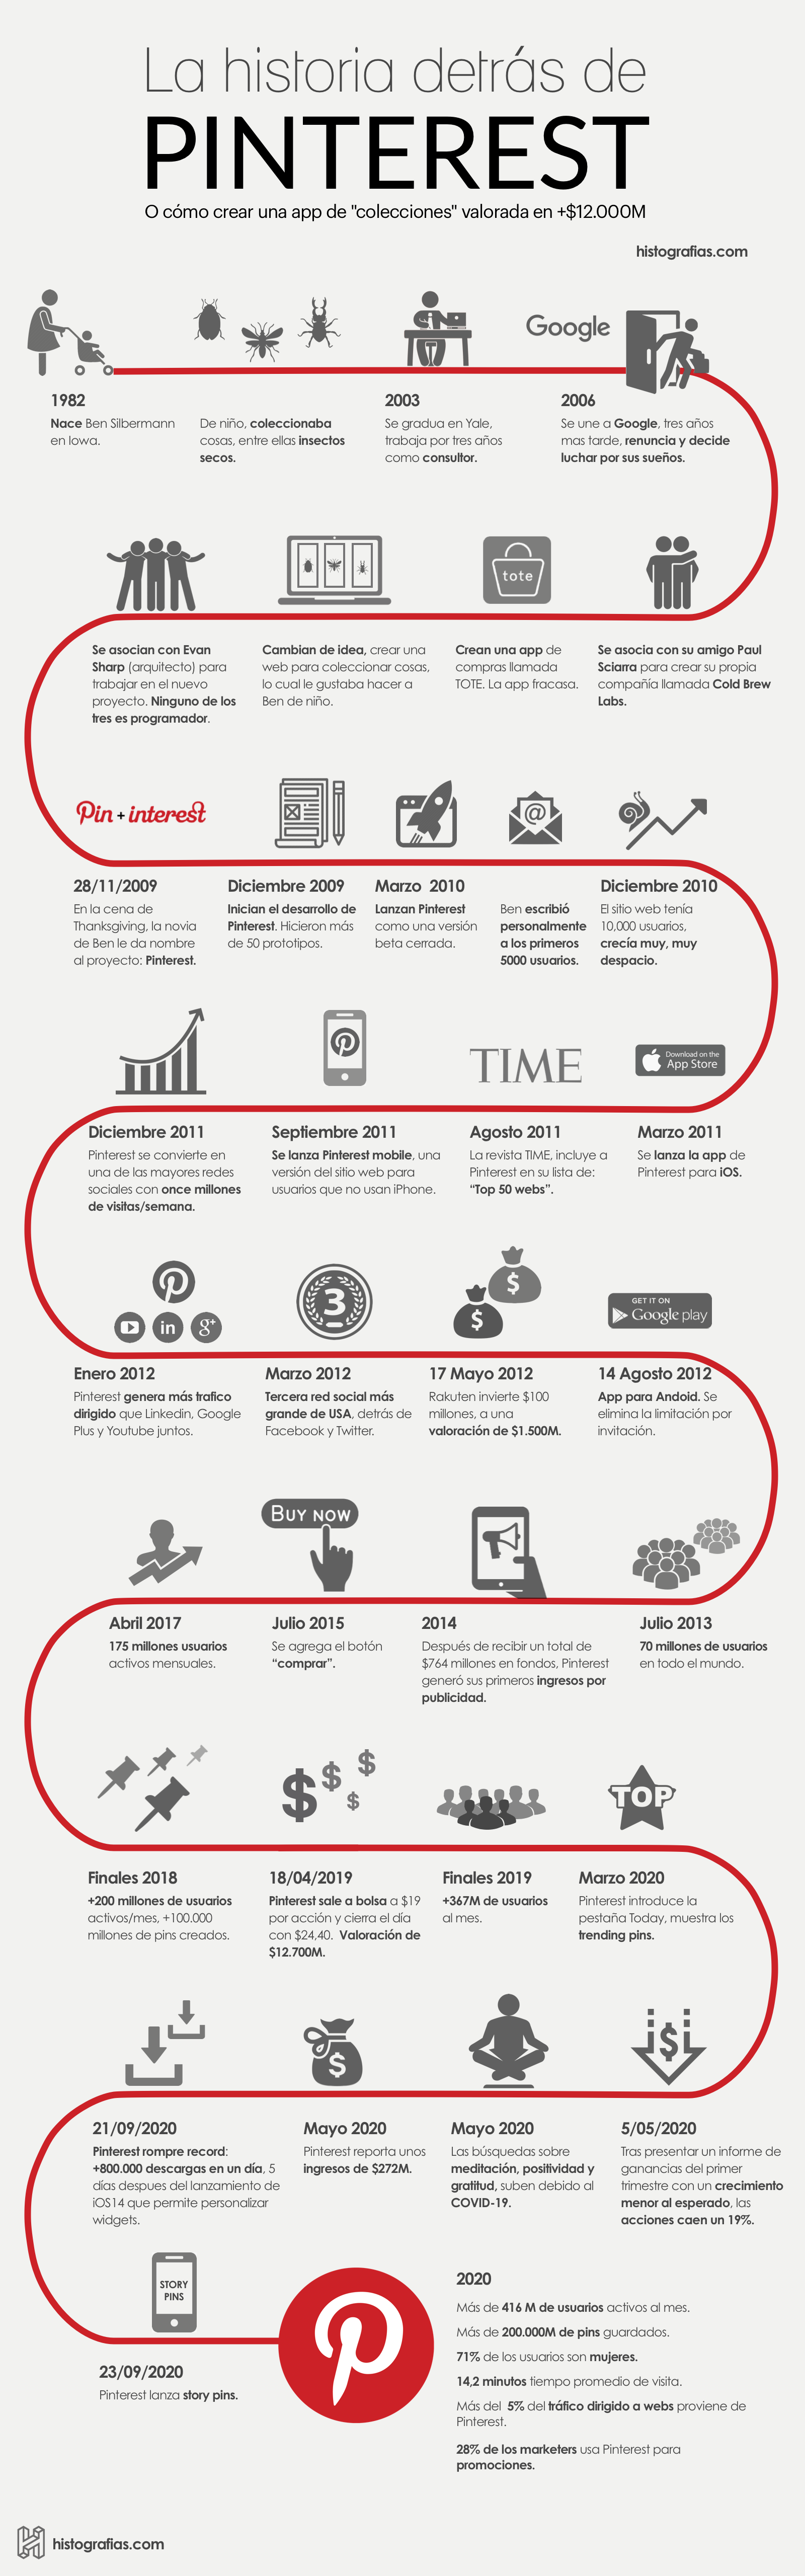 infografía que cuenta la historia de Pinterest desde 1982, año que nació uno de sus fundadores Ben Silbermann, hasta el año 2020.